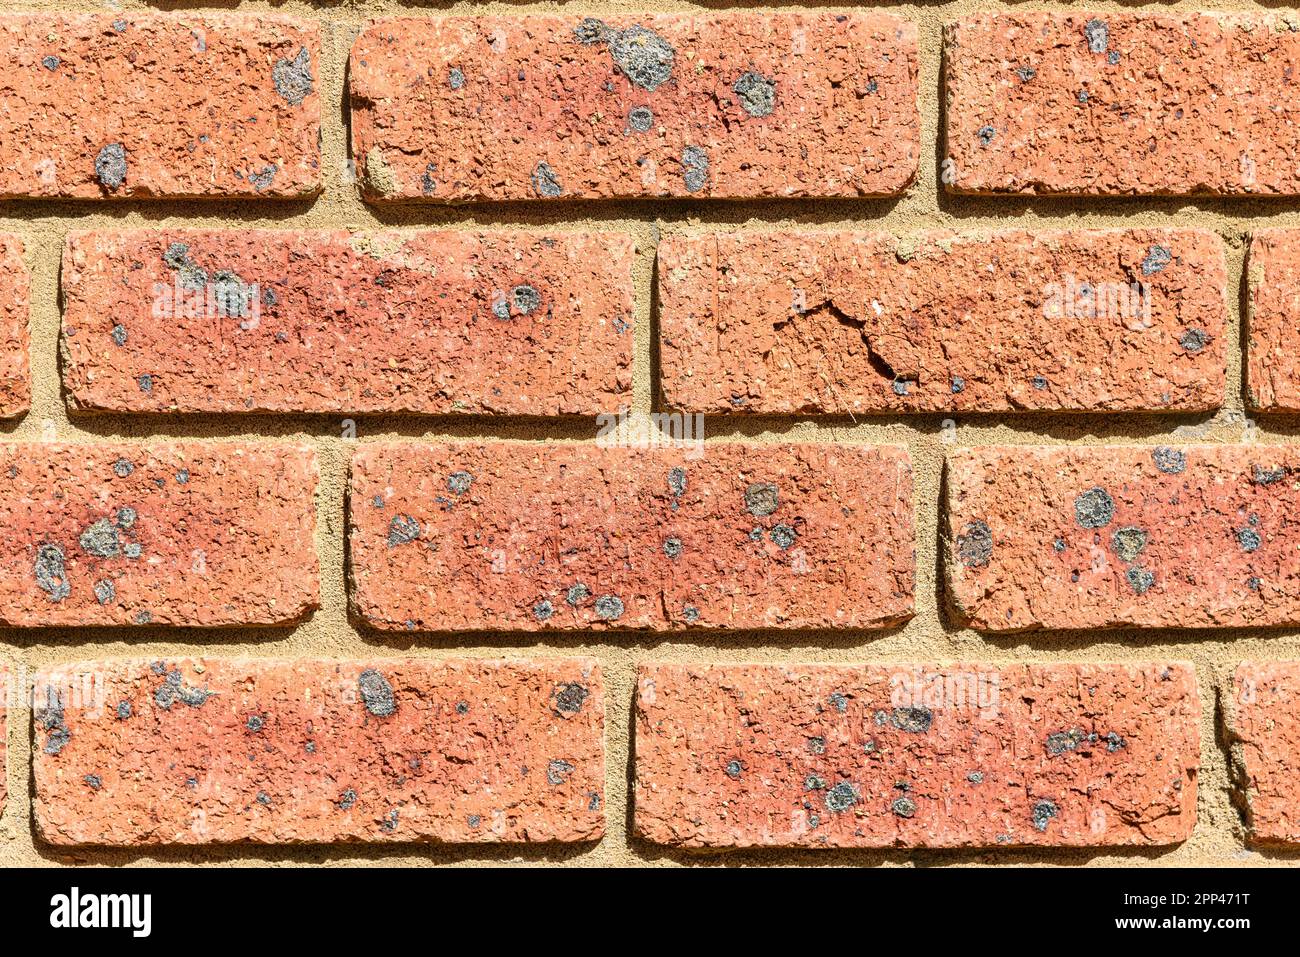 Un mur de brique rouge avec beaucoup de briques ayant des taches noires sur eux Banque D'Images